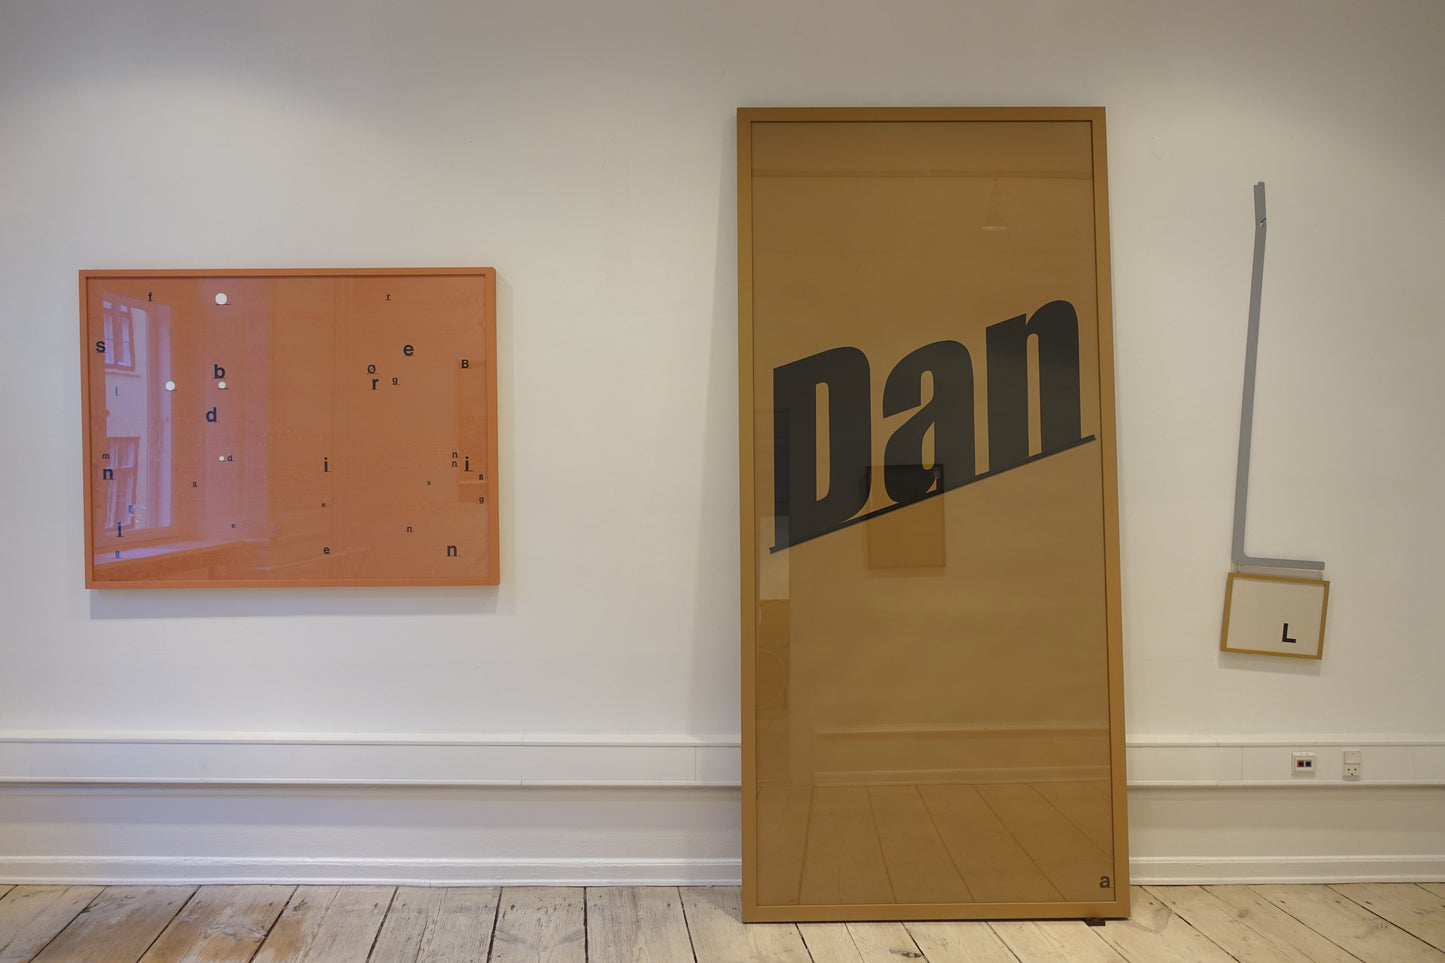 Installationsbillede med "Dan"